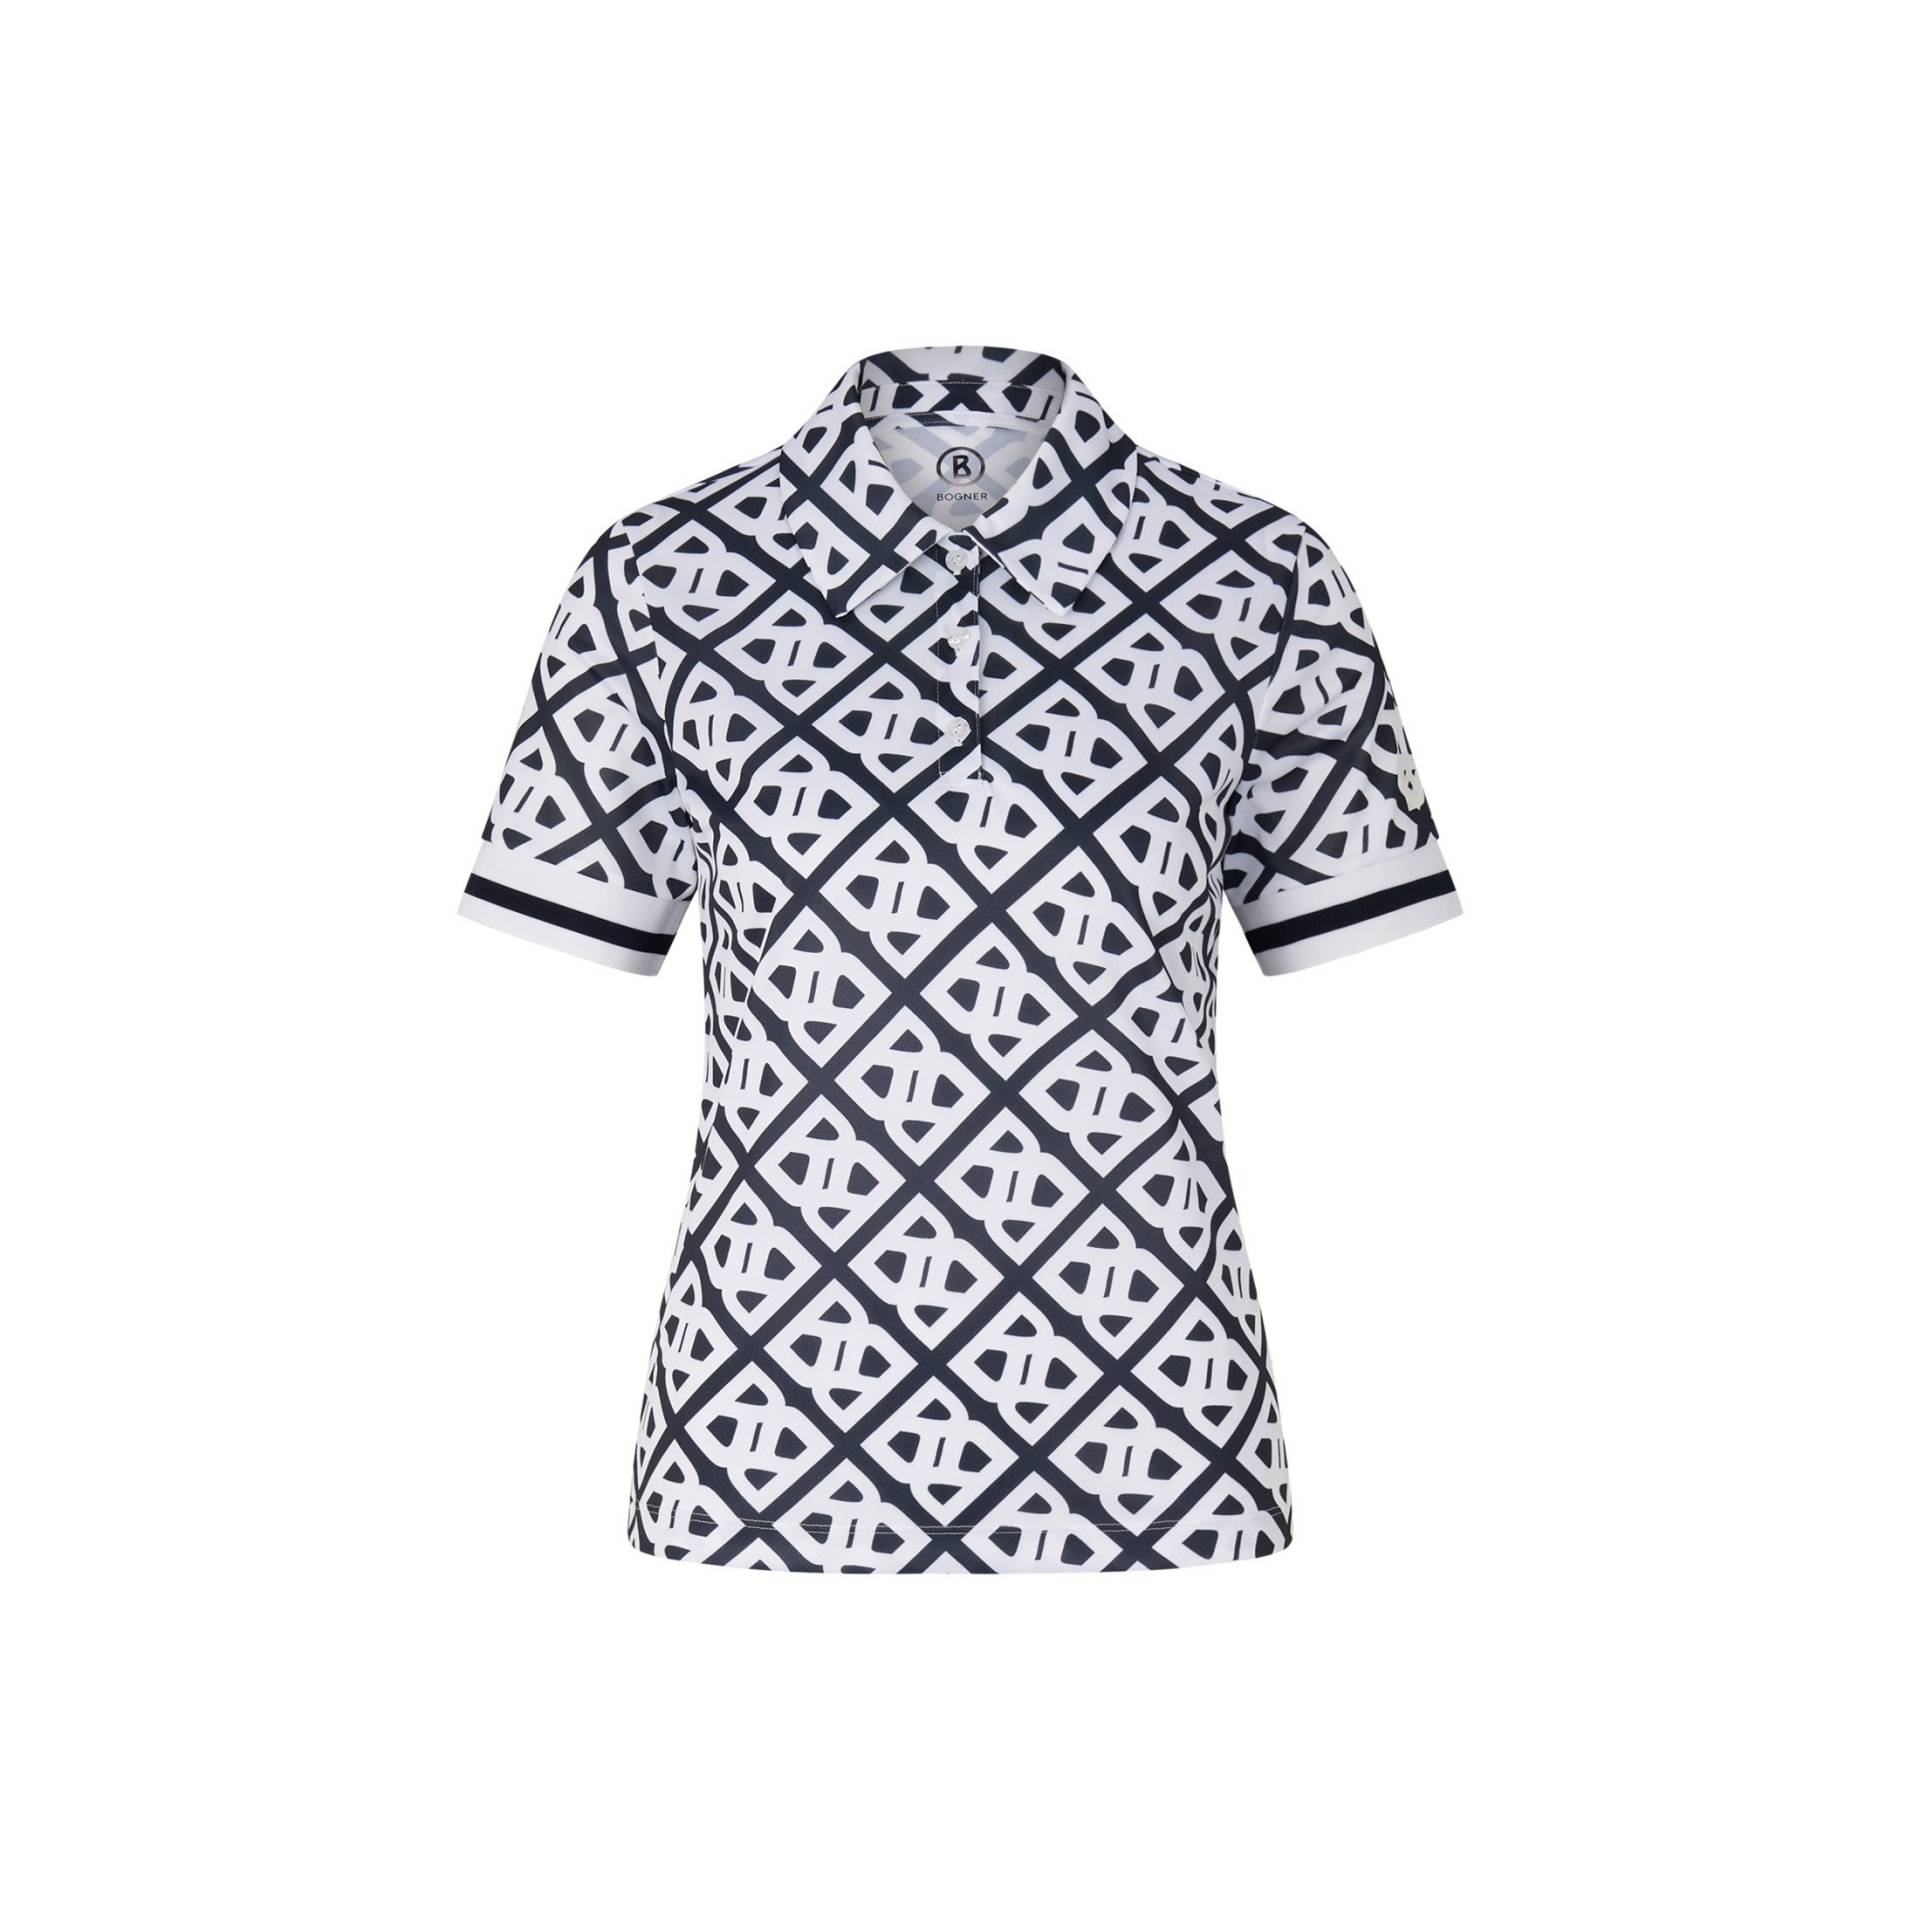 BOGNER SPORT Funktions-Polo-Shirt Calysa für Damen - Navy-Blau/Weiß - 42 von BOGNER Sport